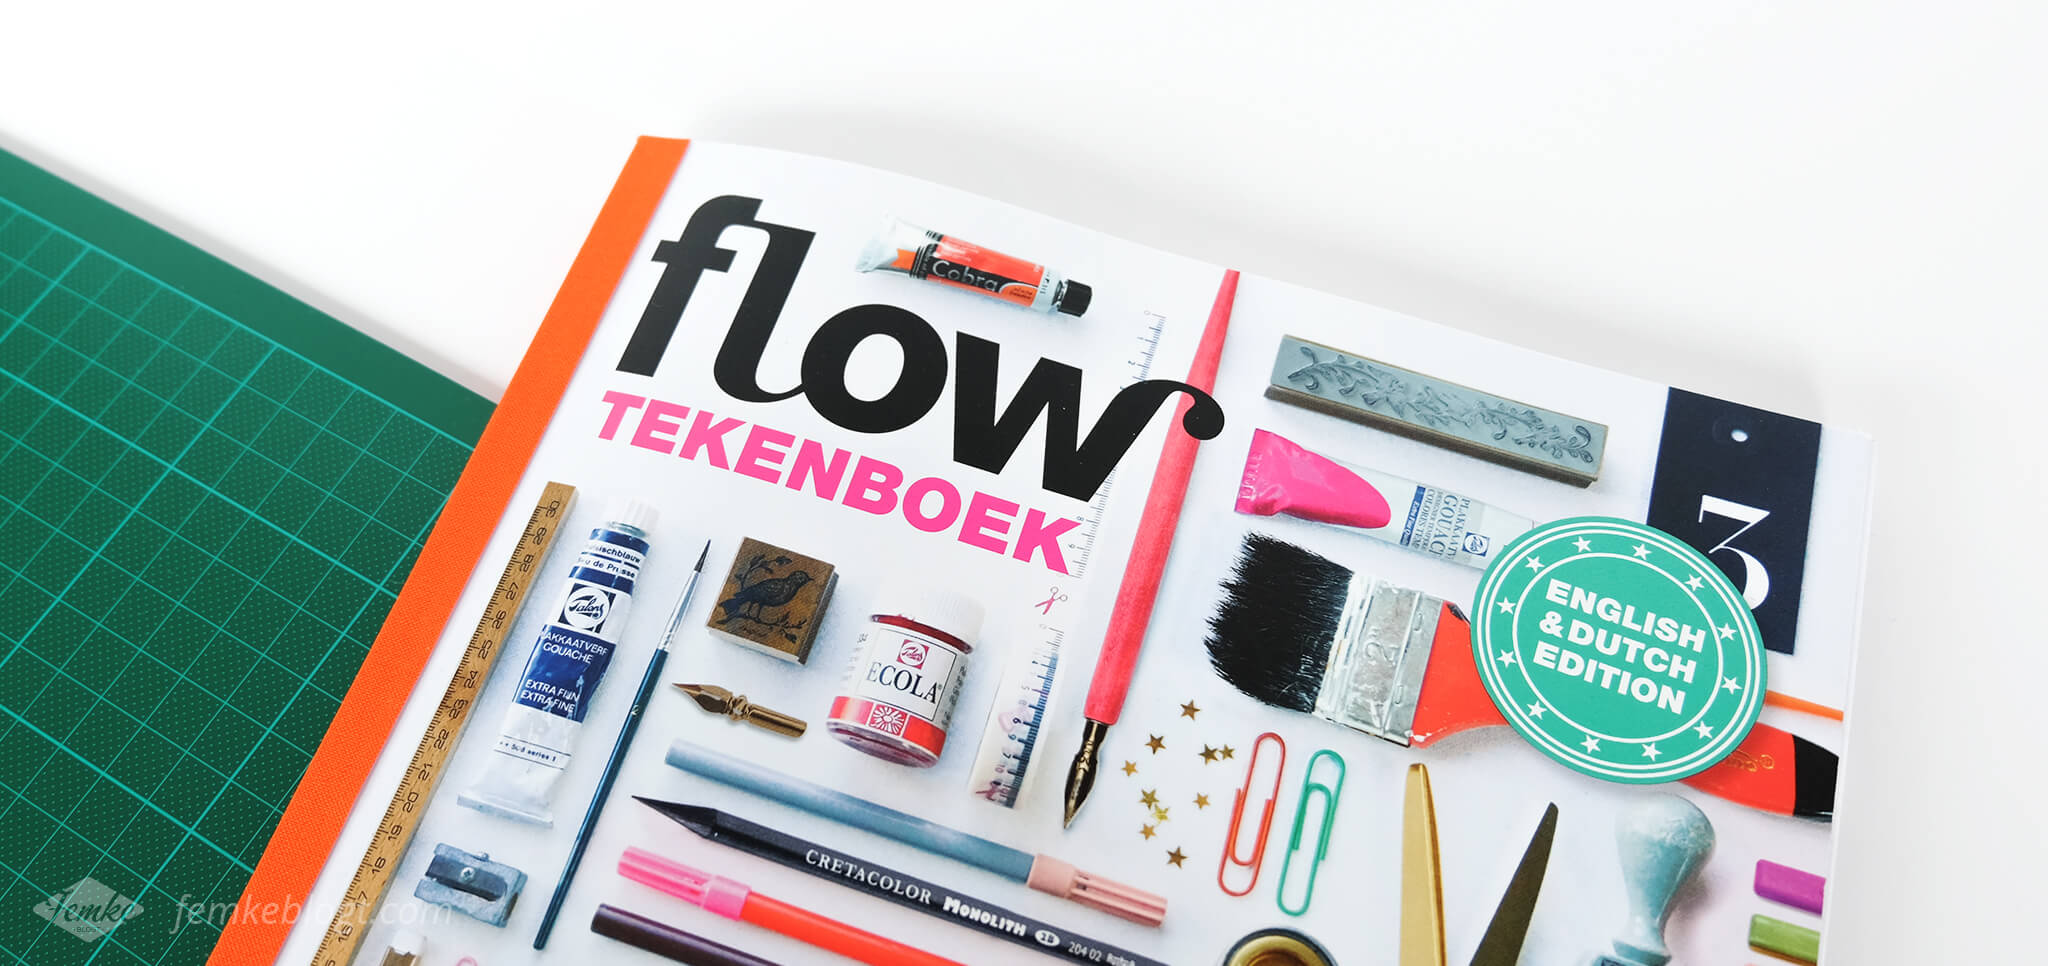 Review: Flow tekenboek